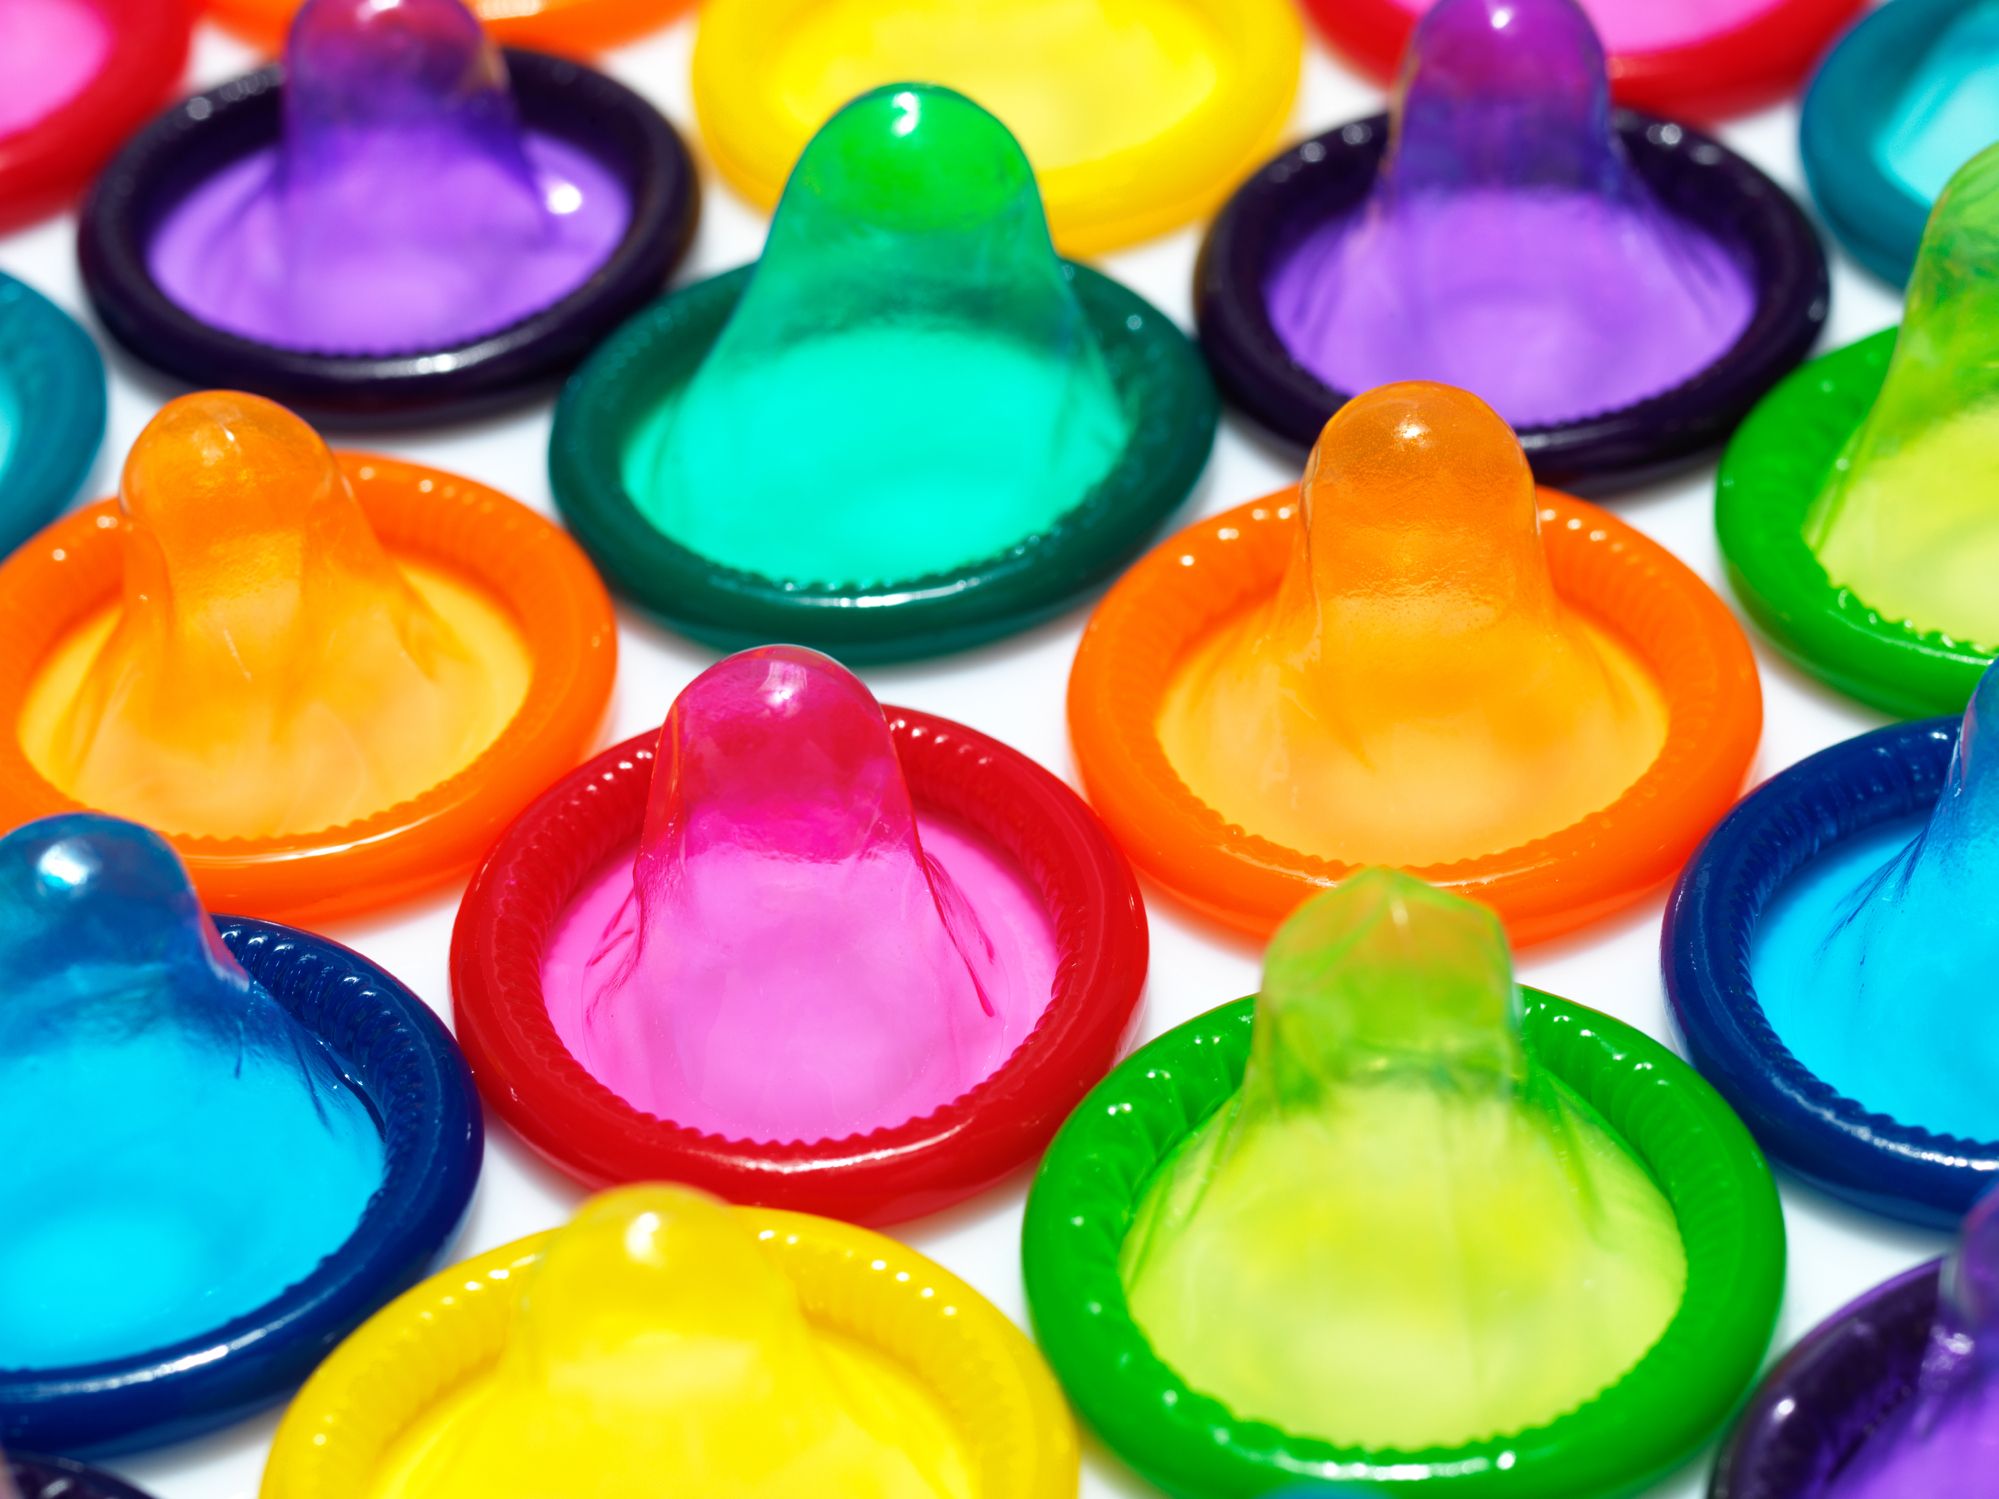 que sabes de los preservativos